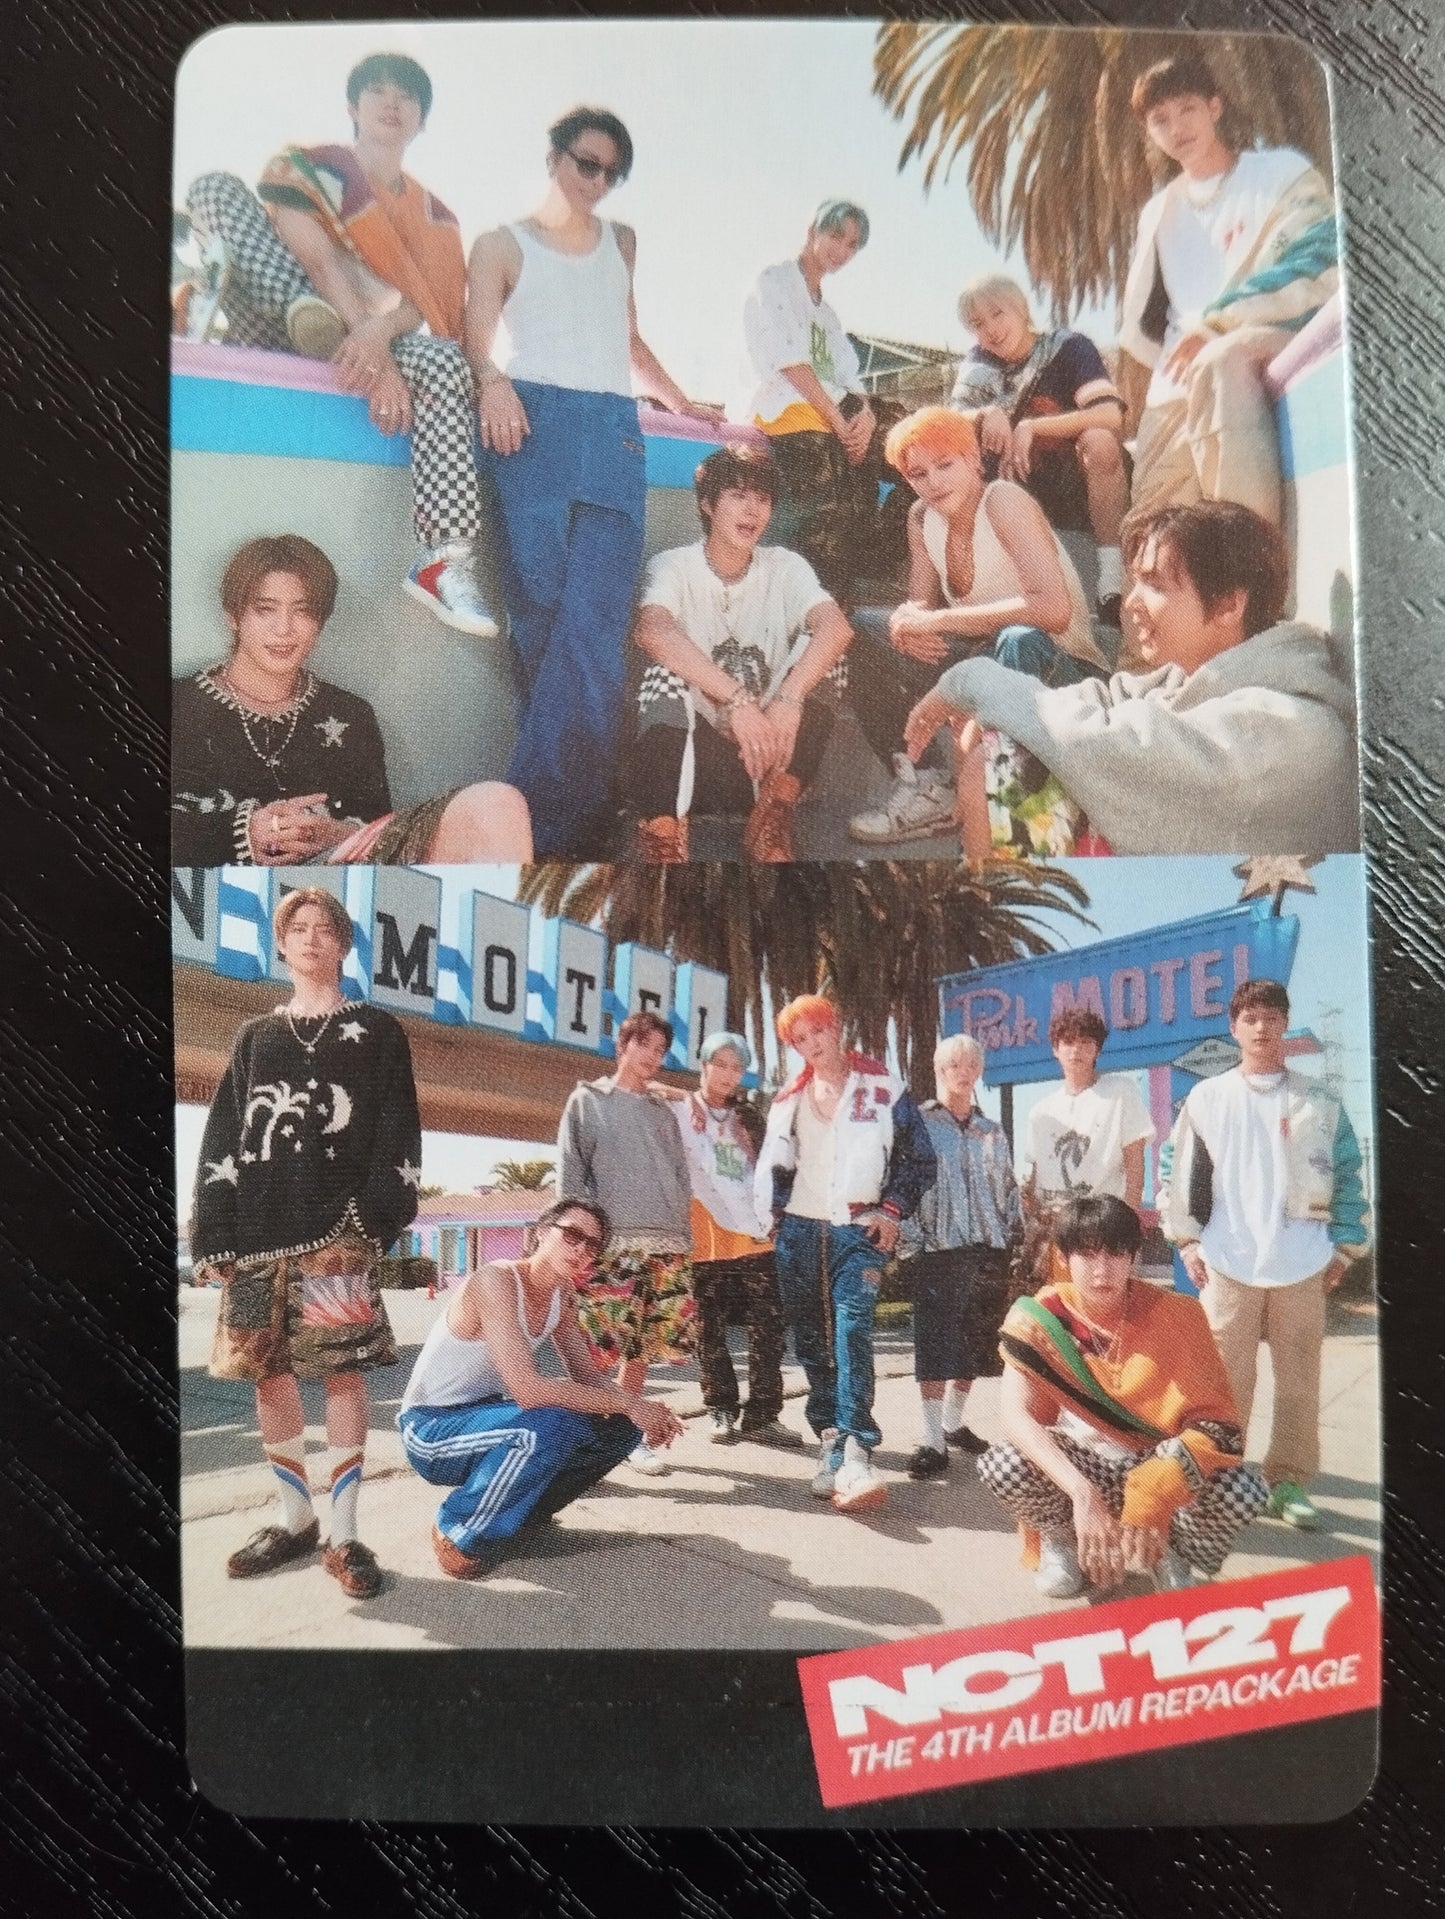 Photocard NCT 127 The 4th album repackage Haechan